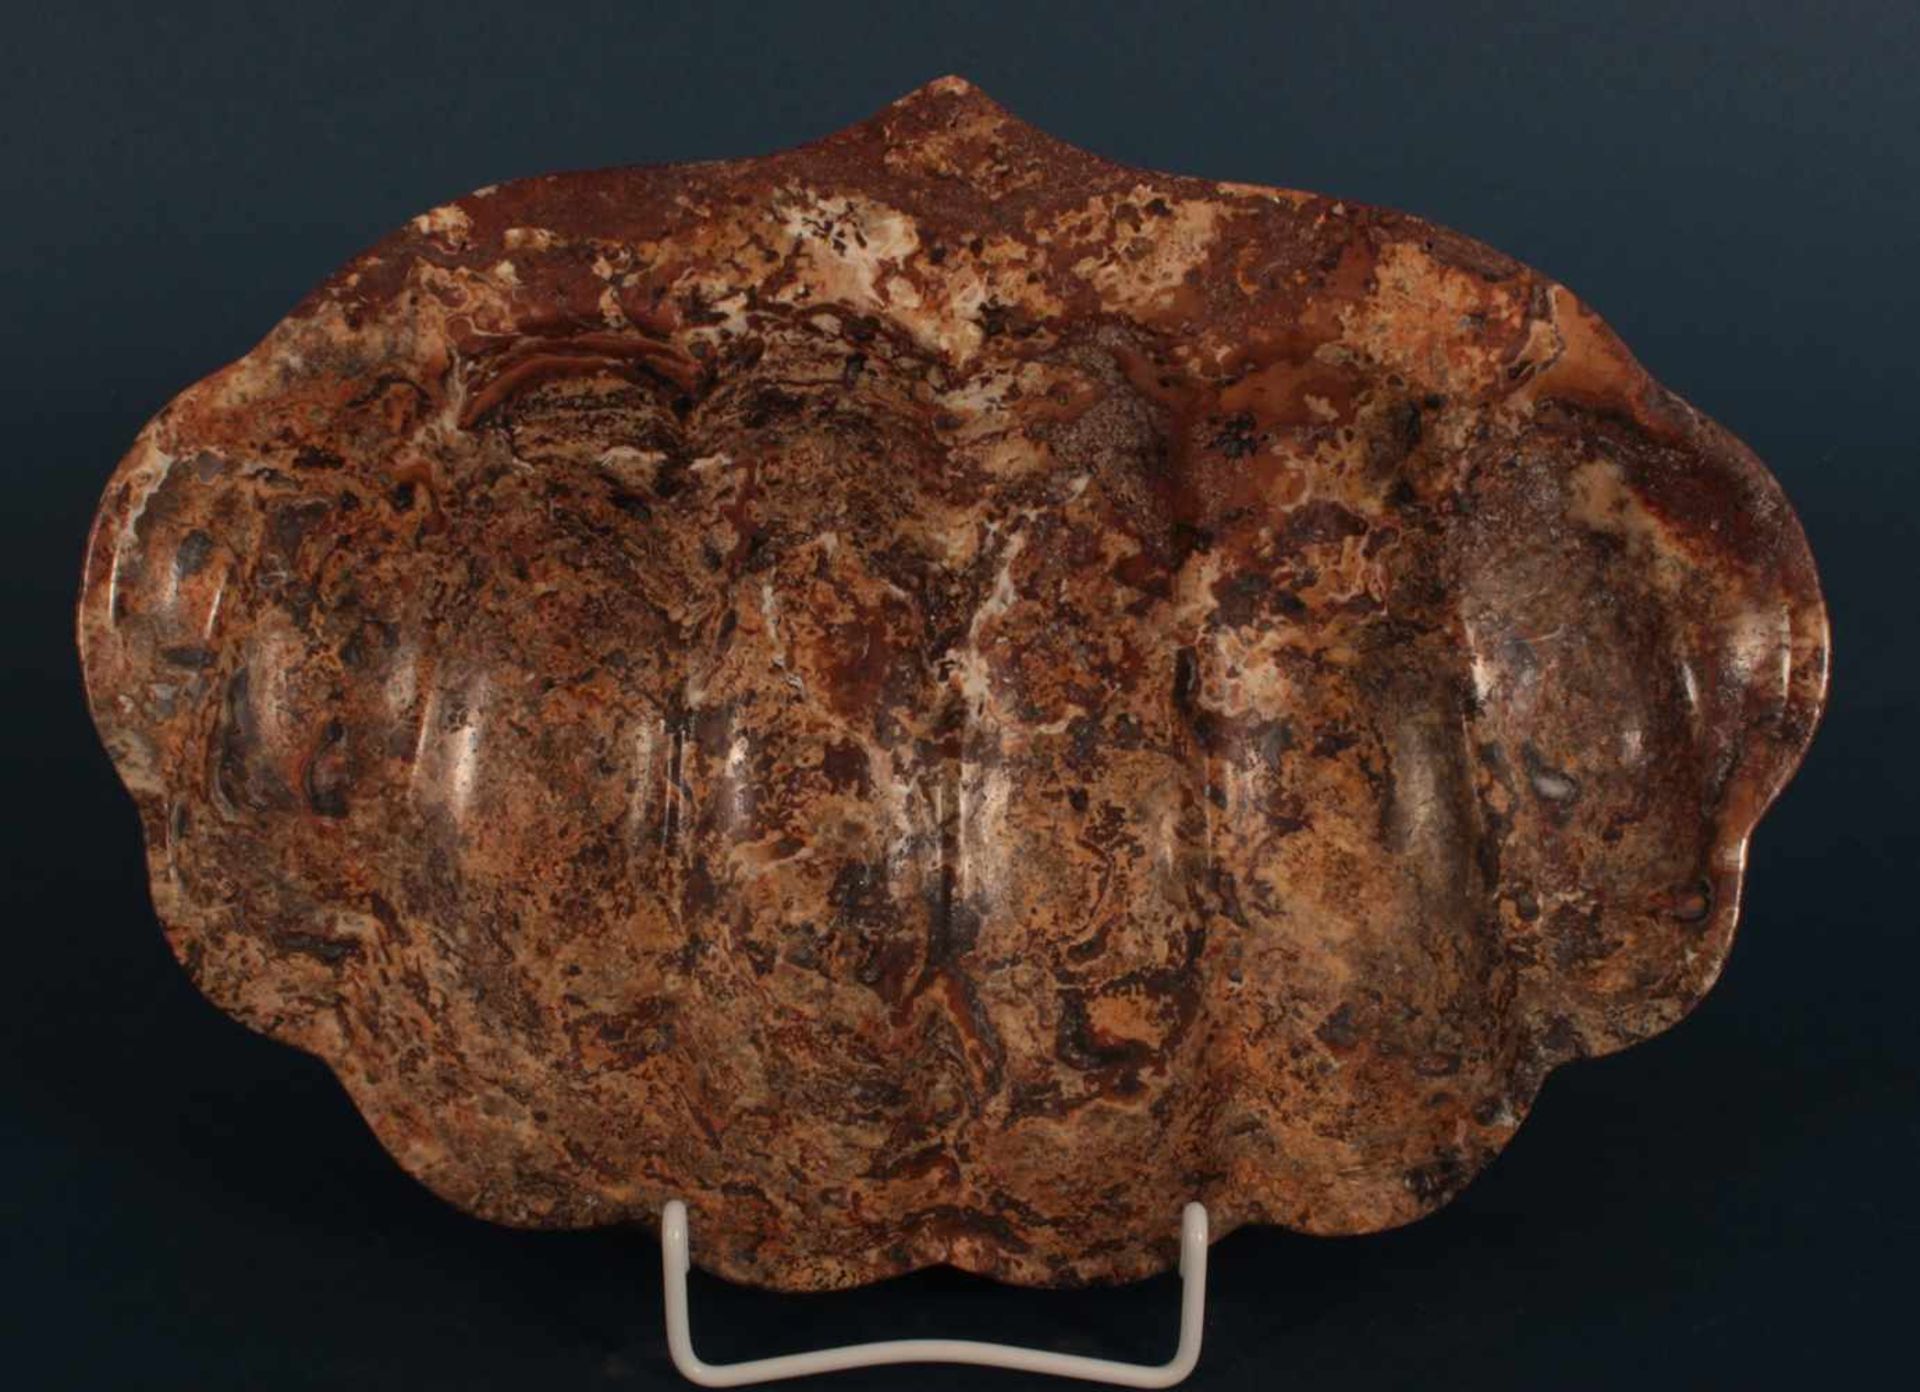 Polierte Mineralstein-Seifenablage in Muschelform, ca. 22 x 32 cm. Bodenseitiger Aufkleber bez. "